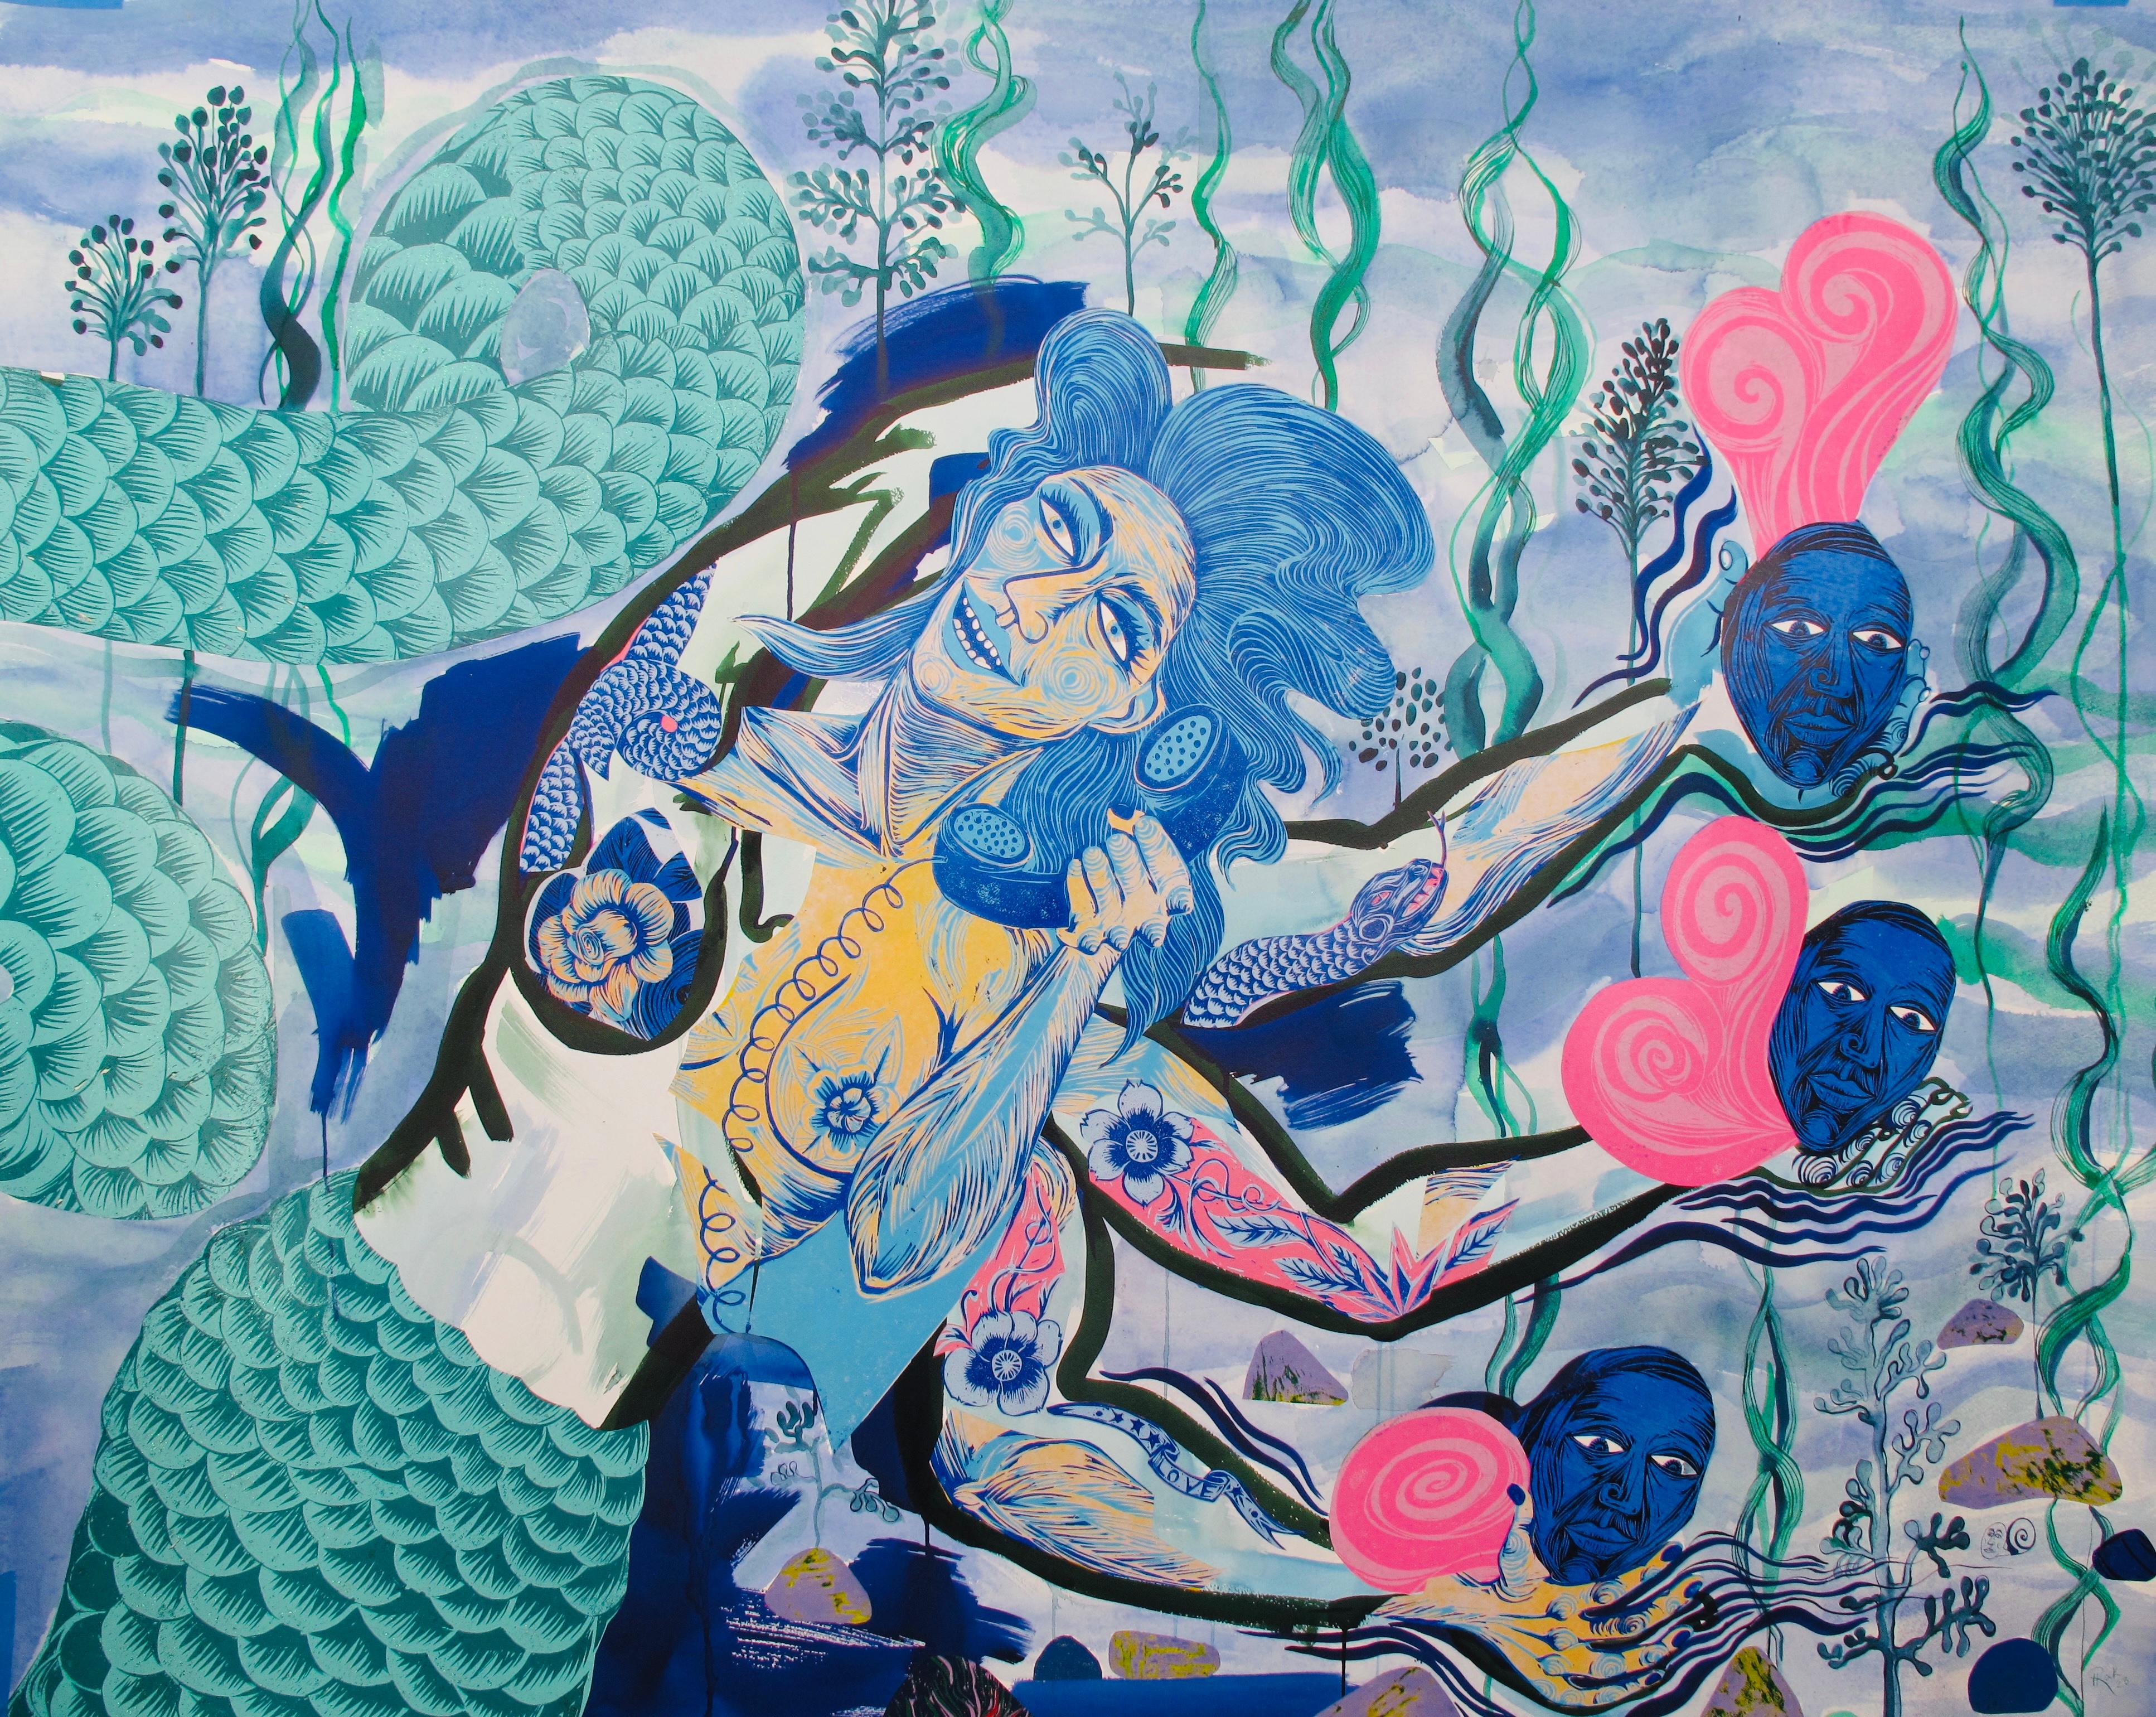 Grande peinture du Royal College of Art LGBTQ+ Femme bleue de l'eau